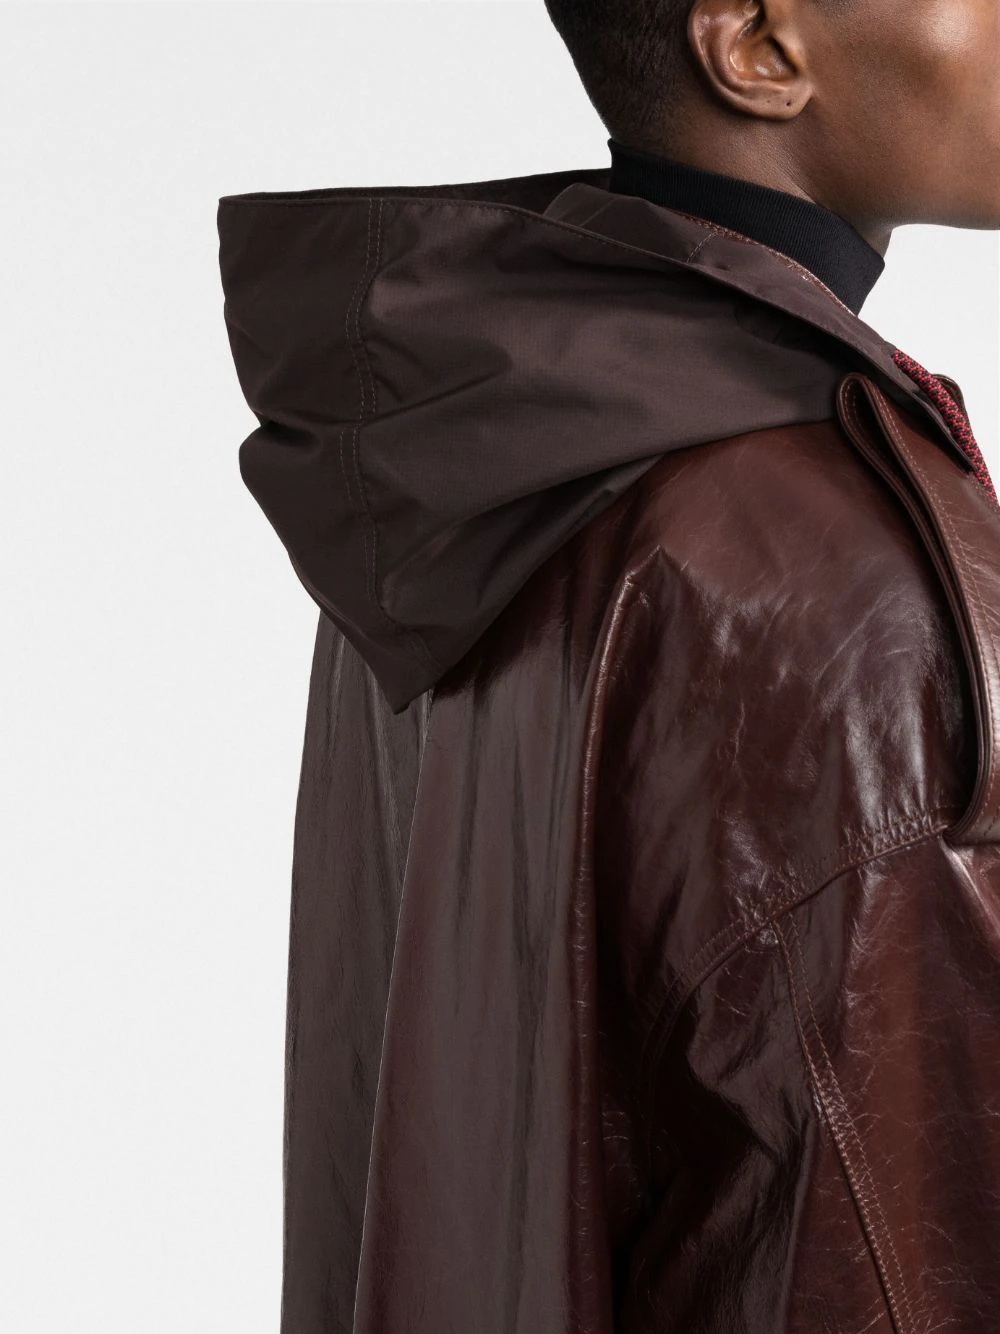 zipped-up leather coat - 5